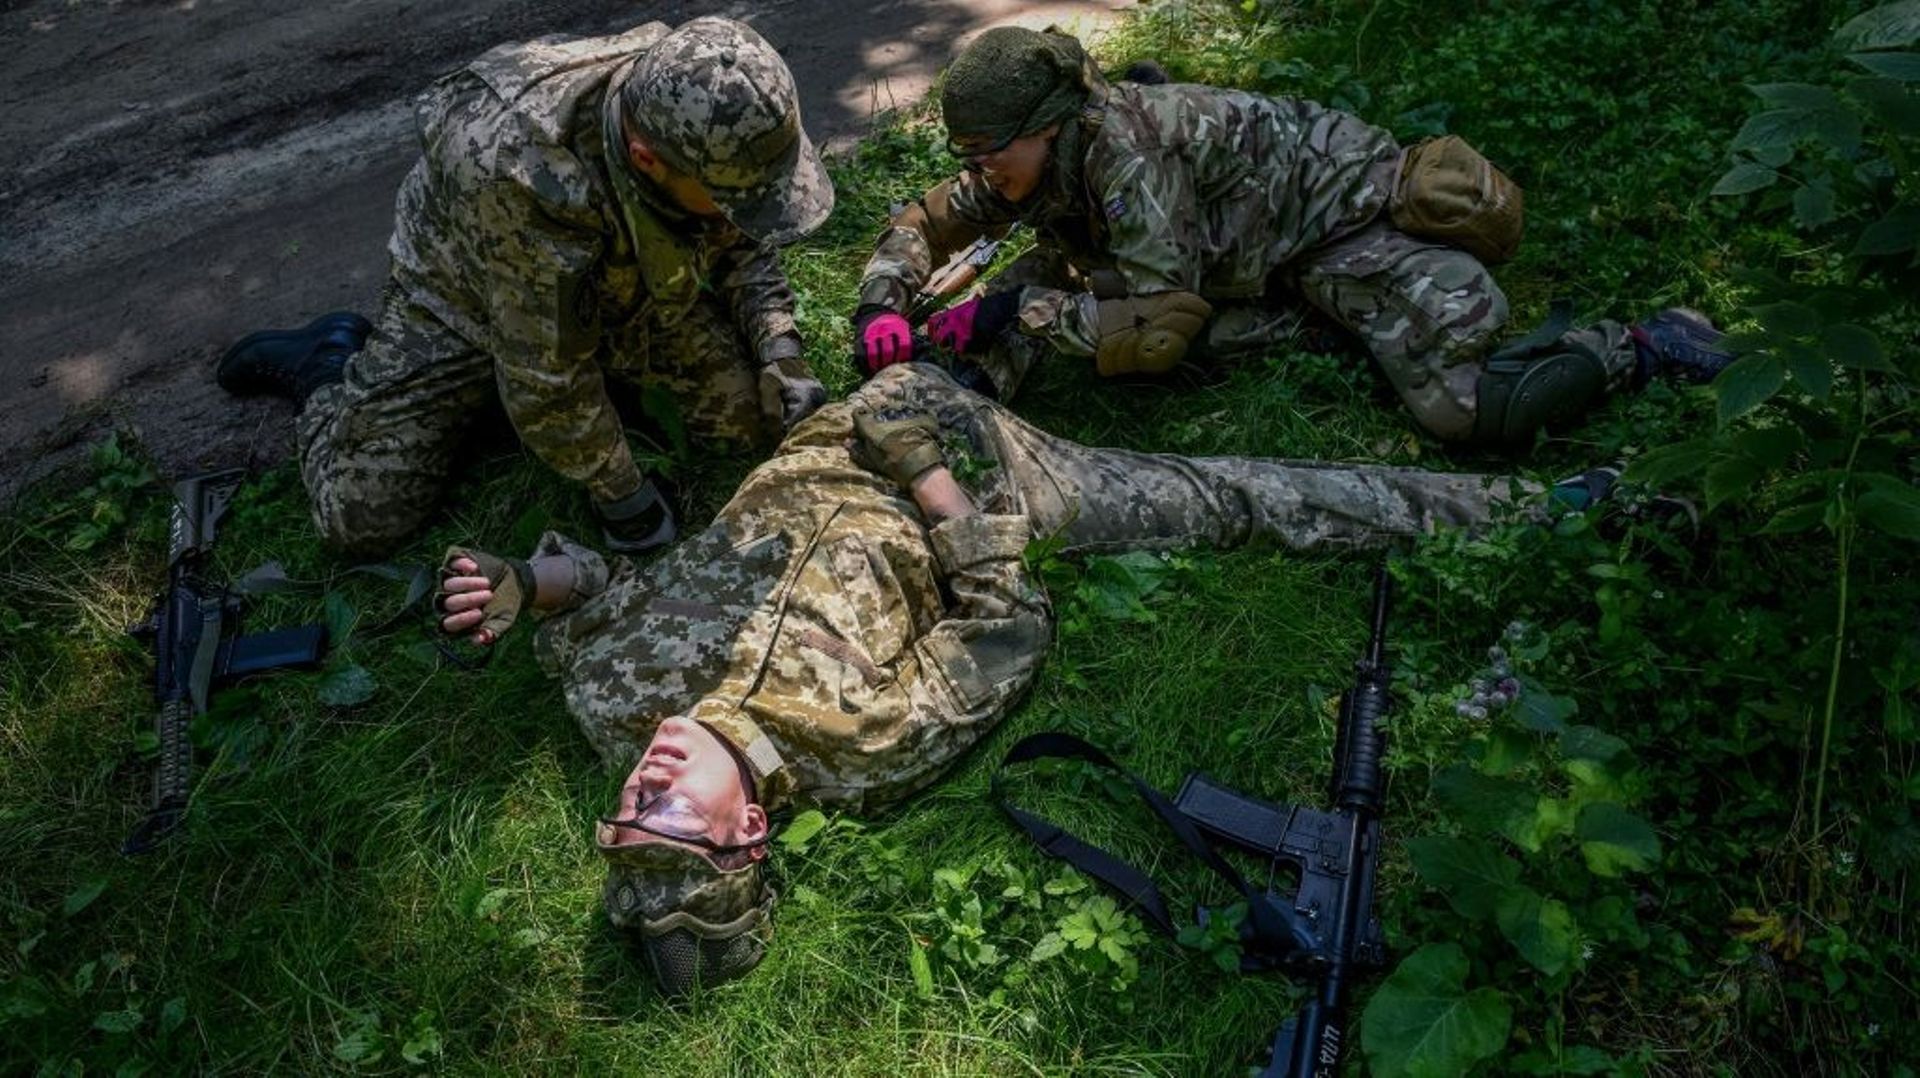 Des civils ukrainiens participent à un entraînement militaire à Lviv, en Ukraine, le 3 août 2022, en pleine guerre entre l’Ukraine et la Russie.